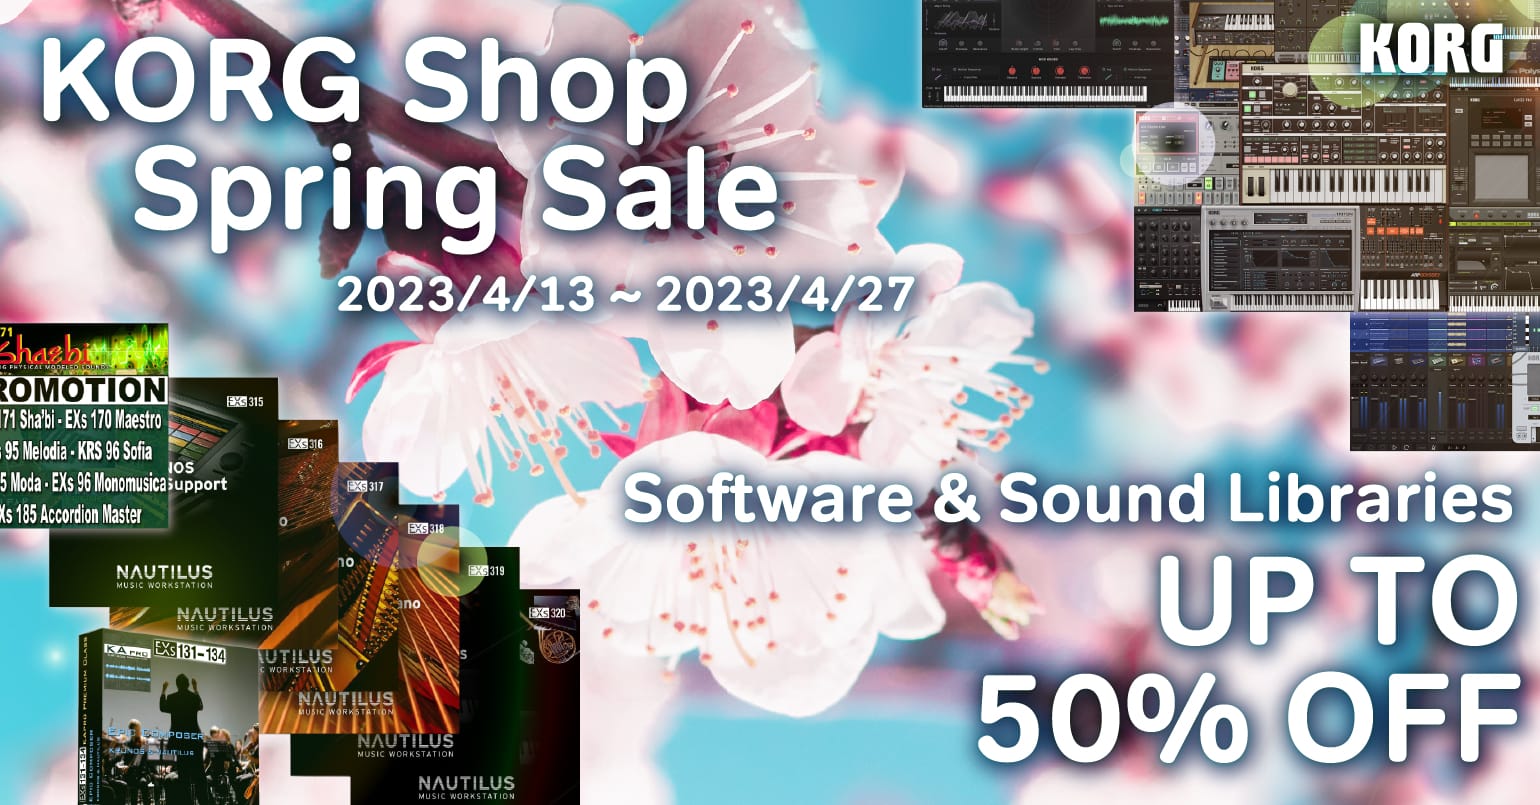 KORG Shop、全ソフトウェア＆サウンドライブラリを最大50%オフで提供